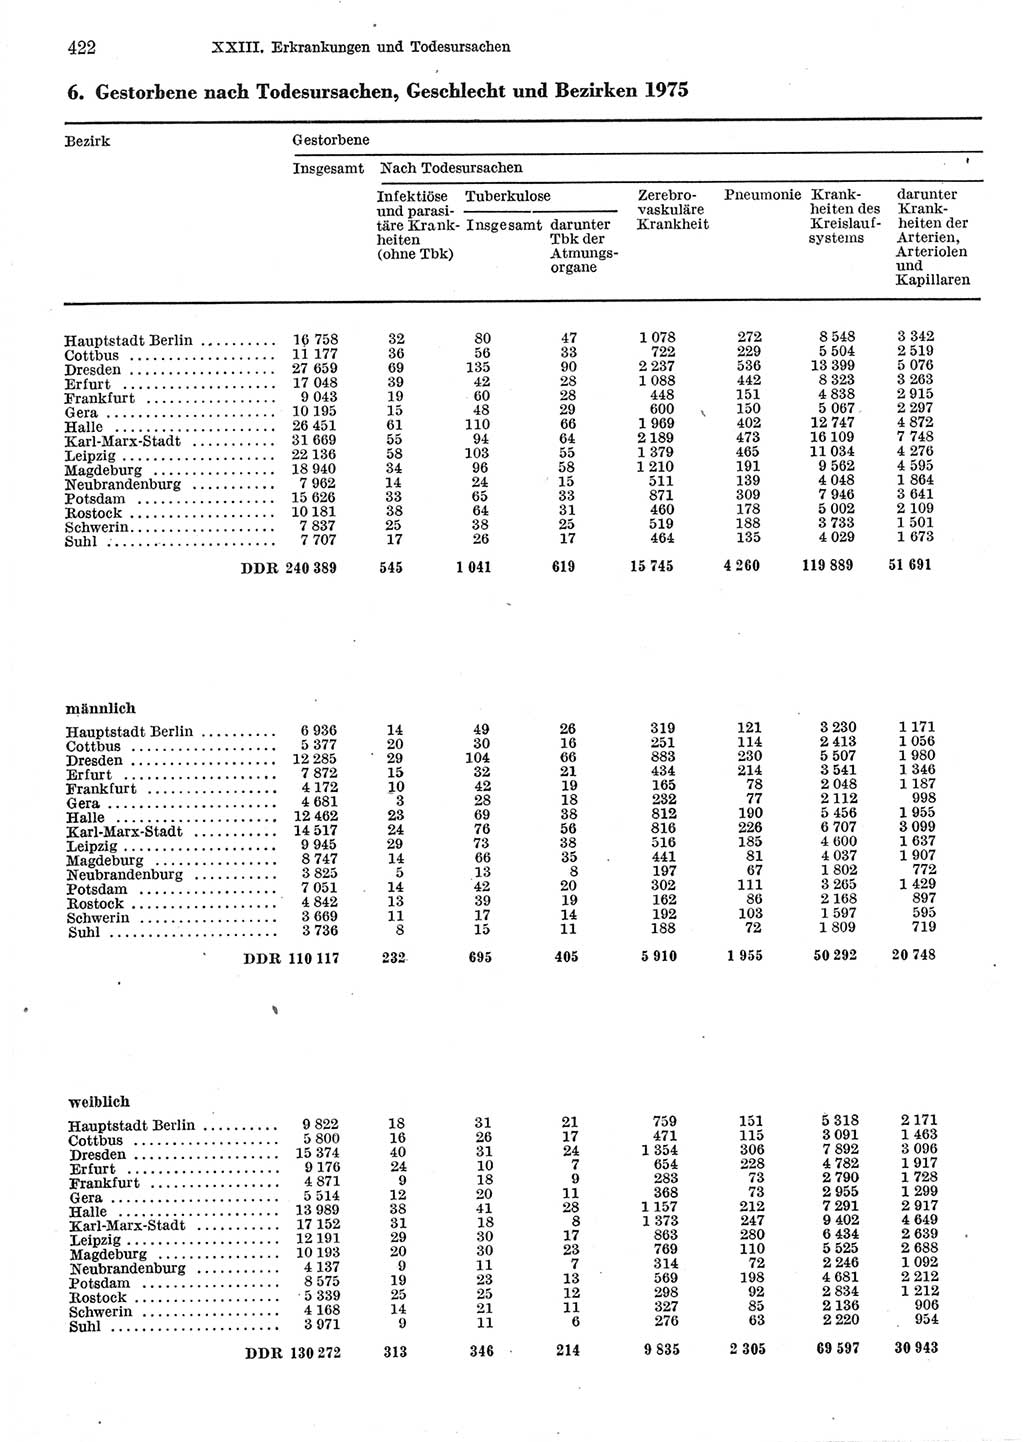 Statistisches Jahrbuch der Deutschen Demokratischen Republik (DDR) 1977, Seite 422 (Stat. Jb. DDR 1977, S. 422)